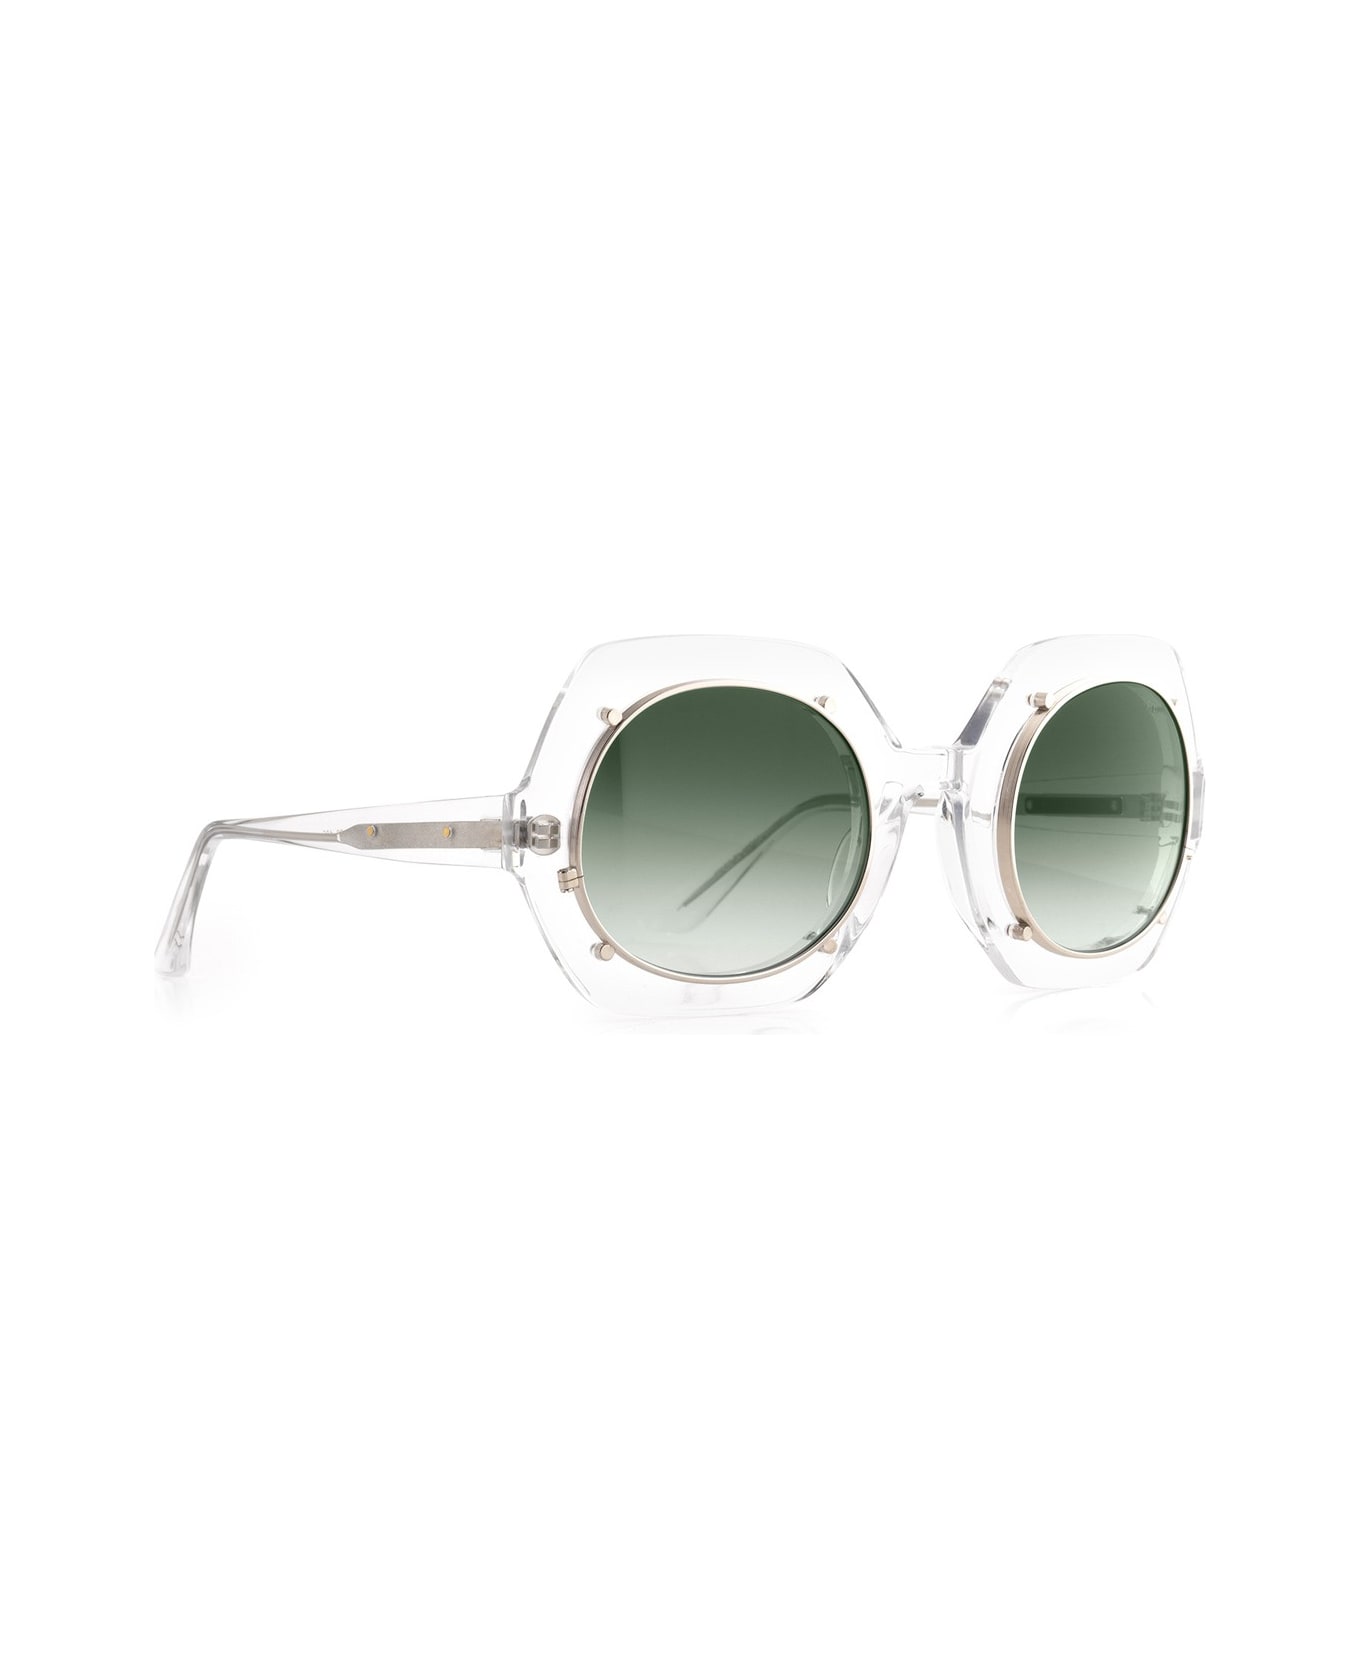 Robert La Roche Rlr S283 Sunglasses - Trasparente サングラス